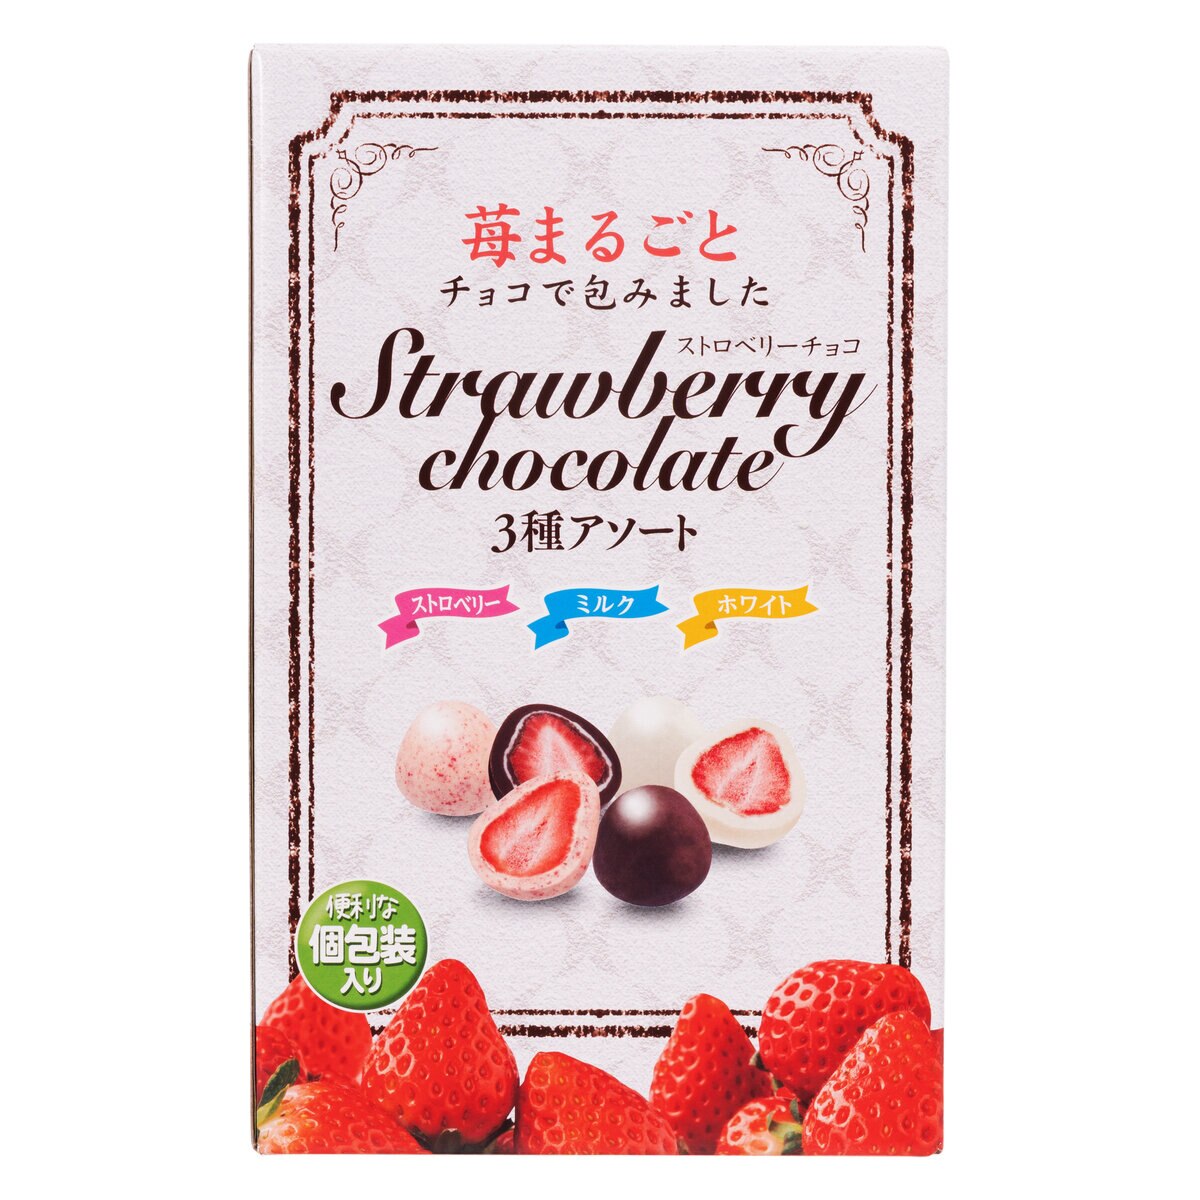 ストロベリーチョコレート アソートボックス 410g | Costco Japan